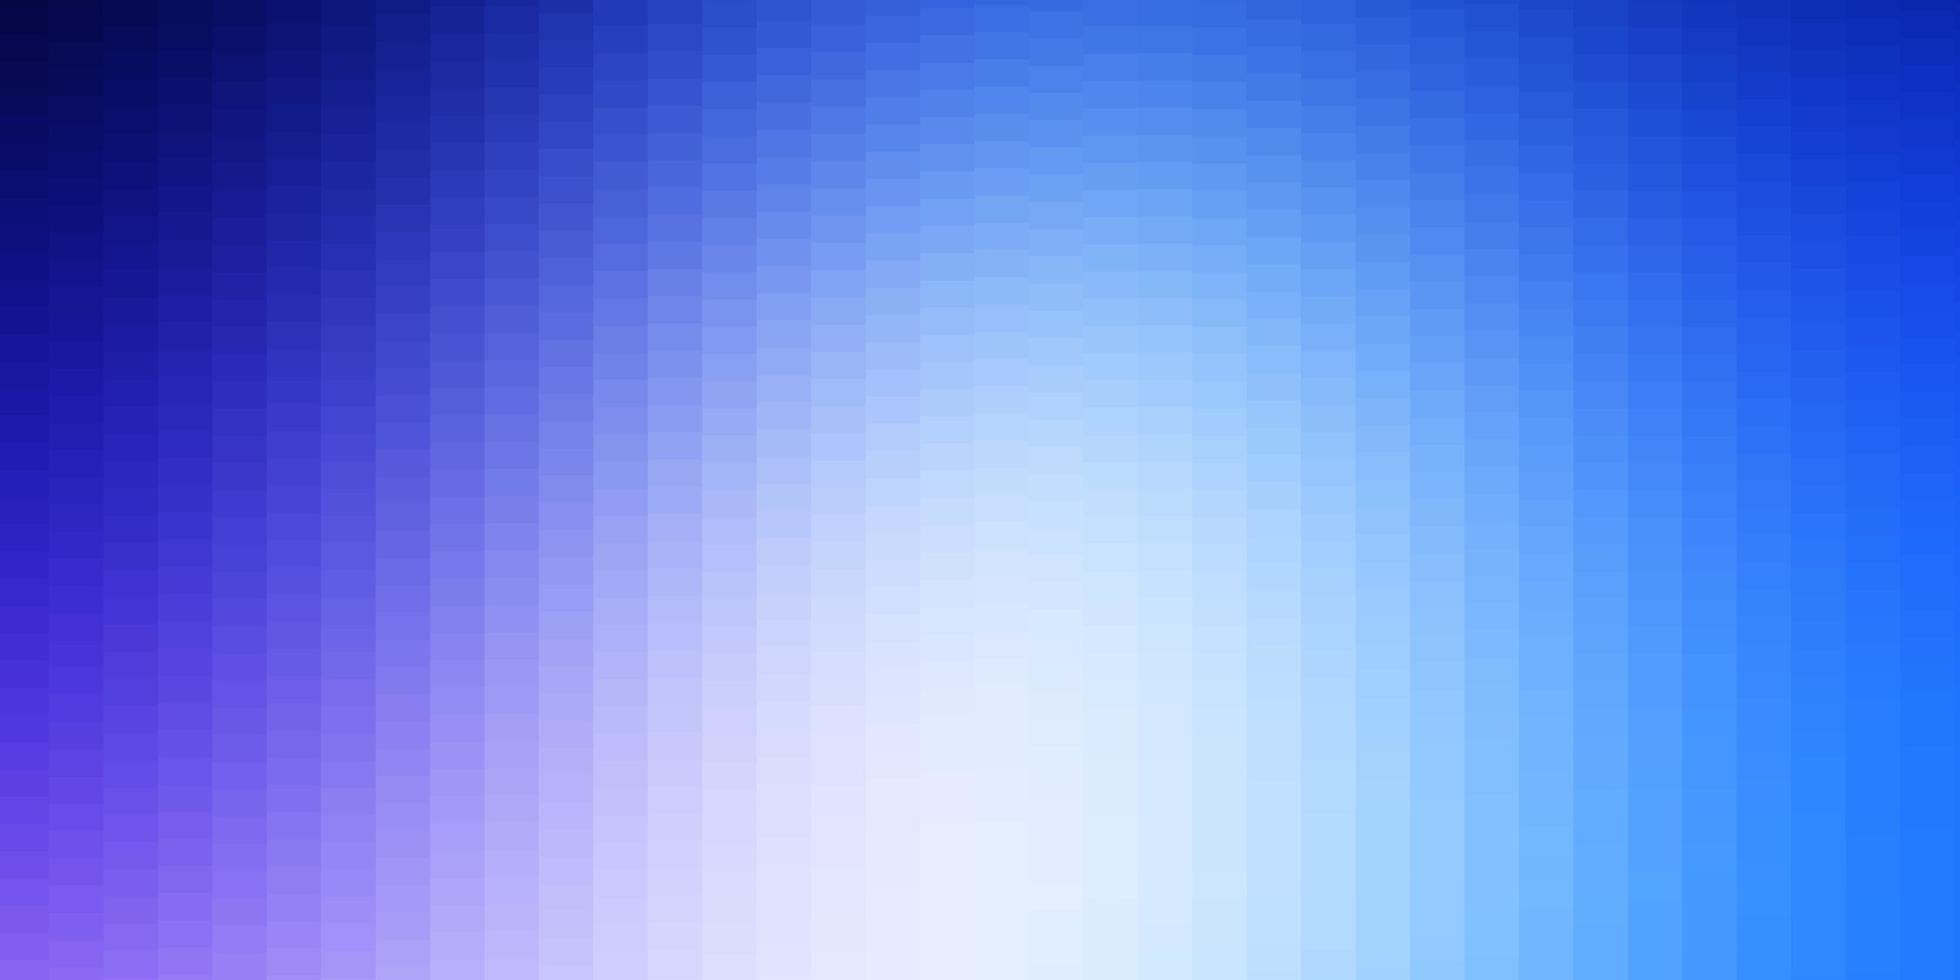 fond de vecteur bleu rose clair avec illustration de rectangles avec un ensemble de rectangles dégradés pour la promotion de votre entreprise